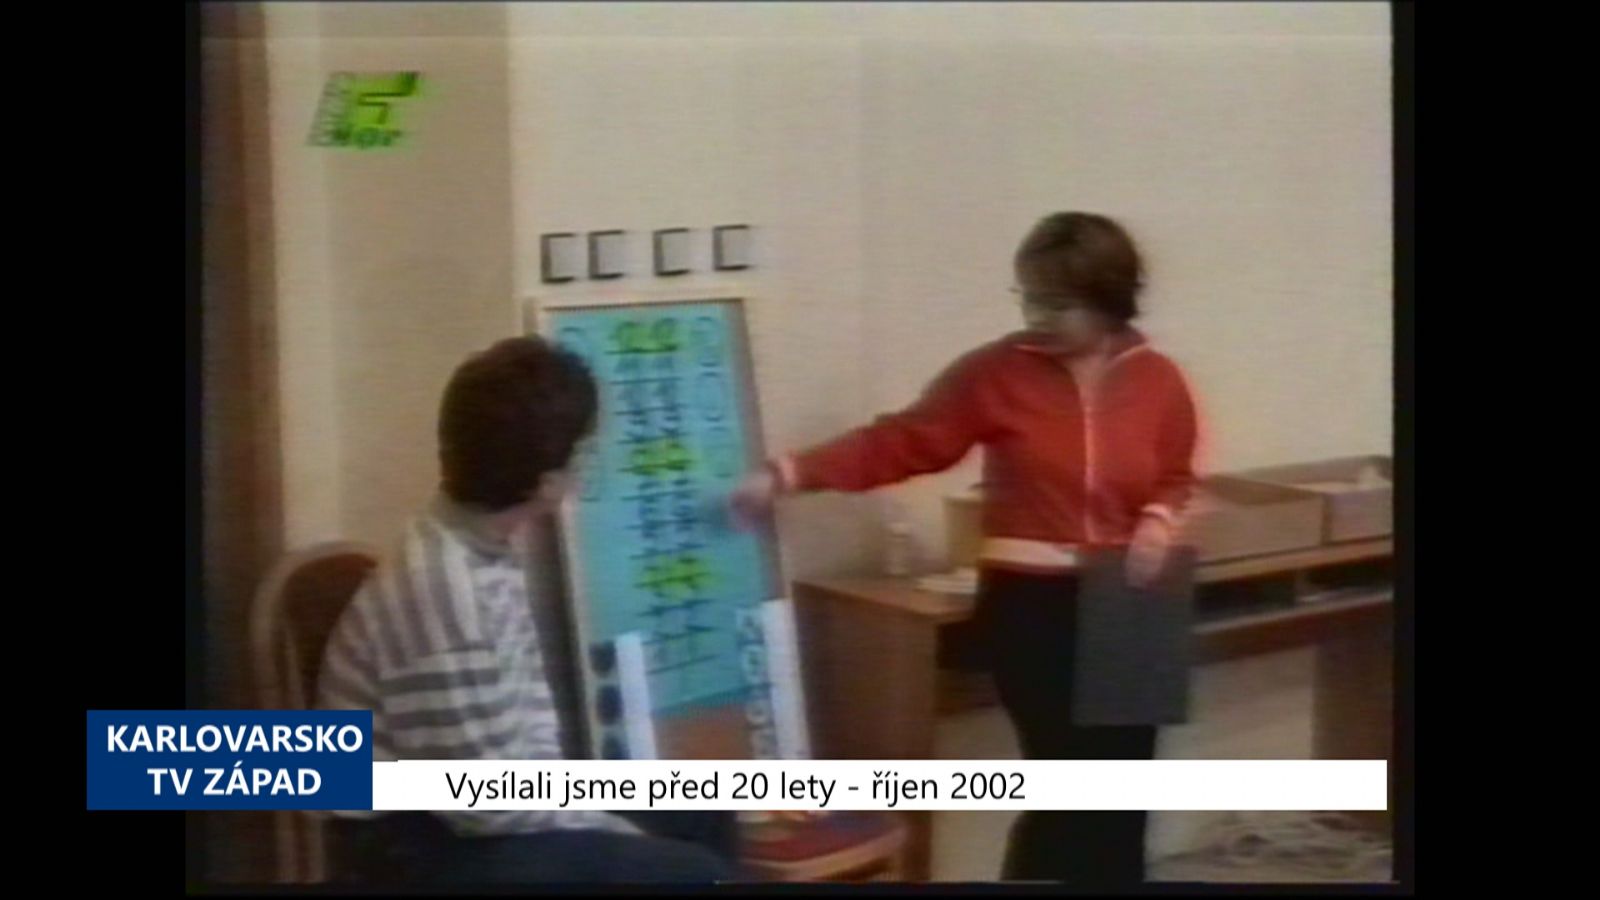 2002 – Cheb: Hygiena uspořádala milionářskou soutěž (TV Západ)